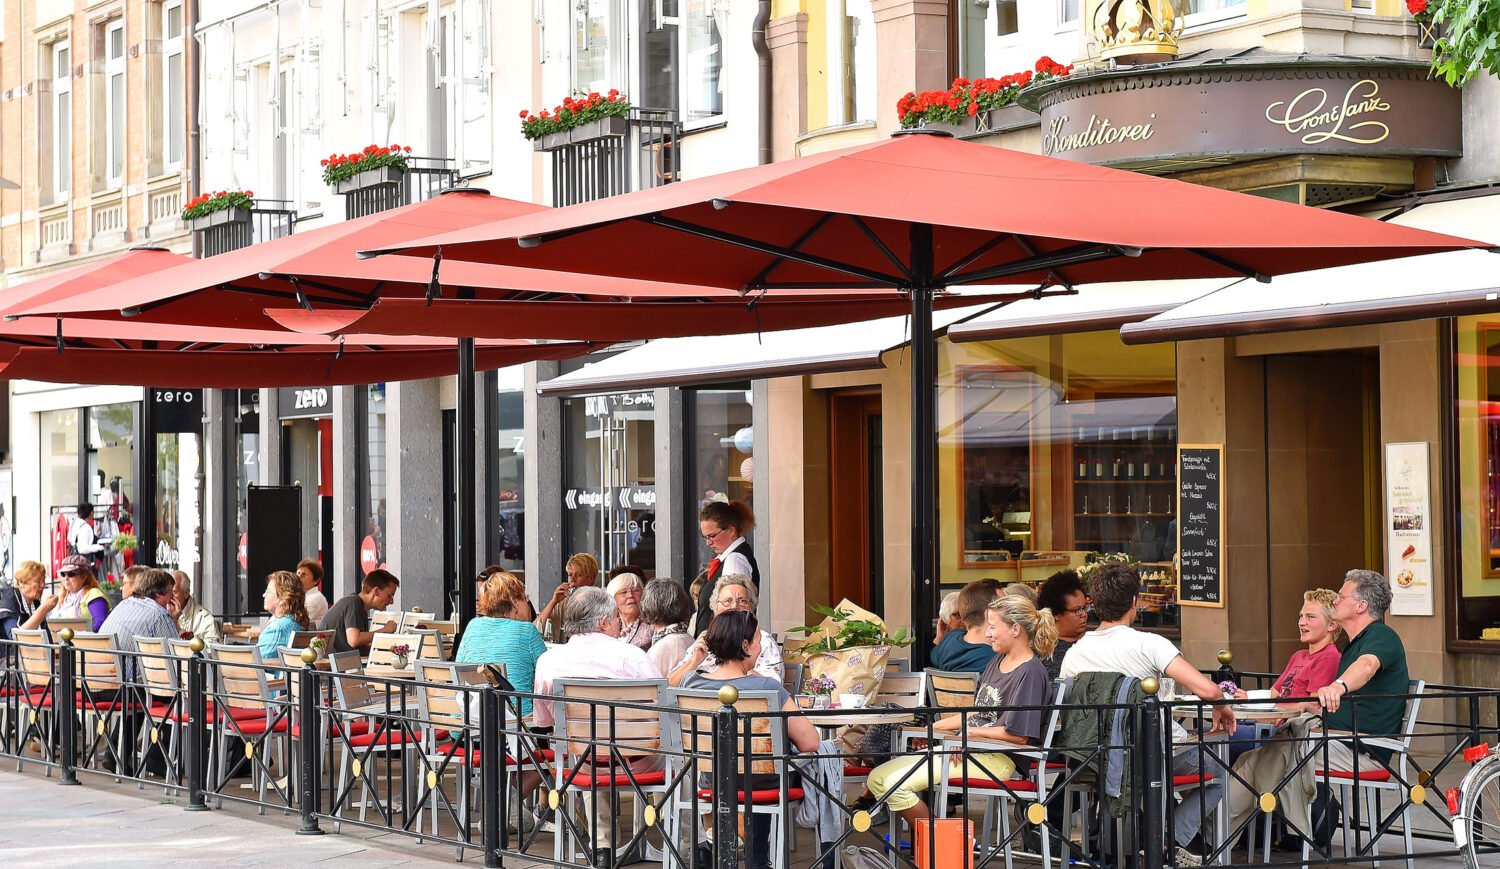 Café Cron & Lanz is famous for its Baumkuchen © Göttingen Tourism and Marketing / Mischke